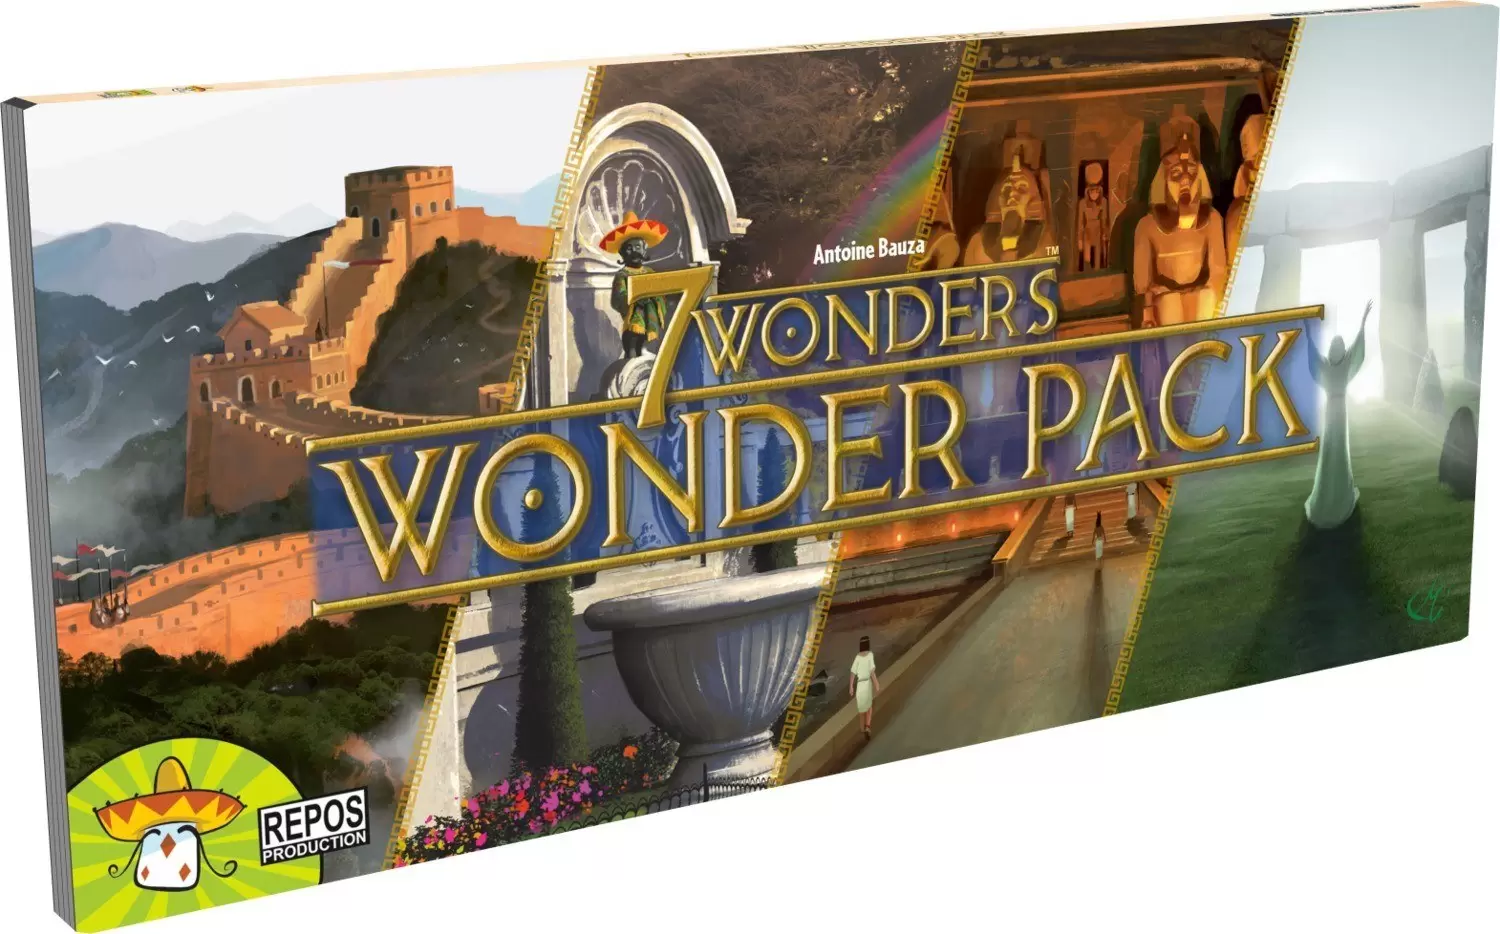 7 Wonders - 7 Wonders Wonder Pack